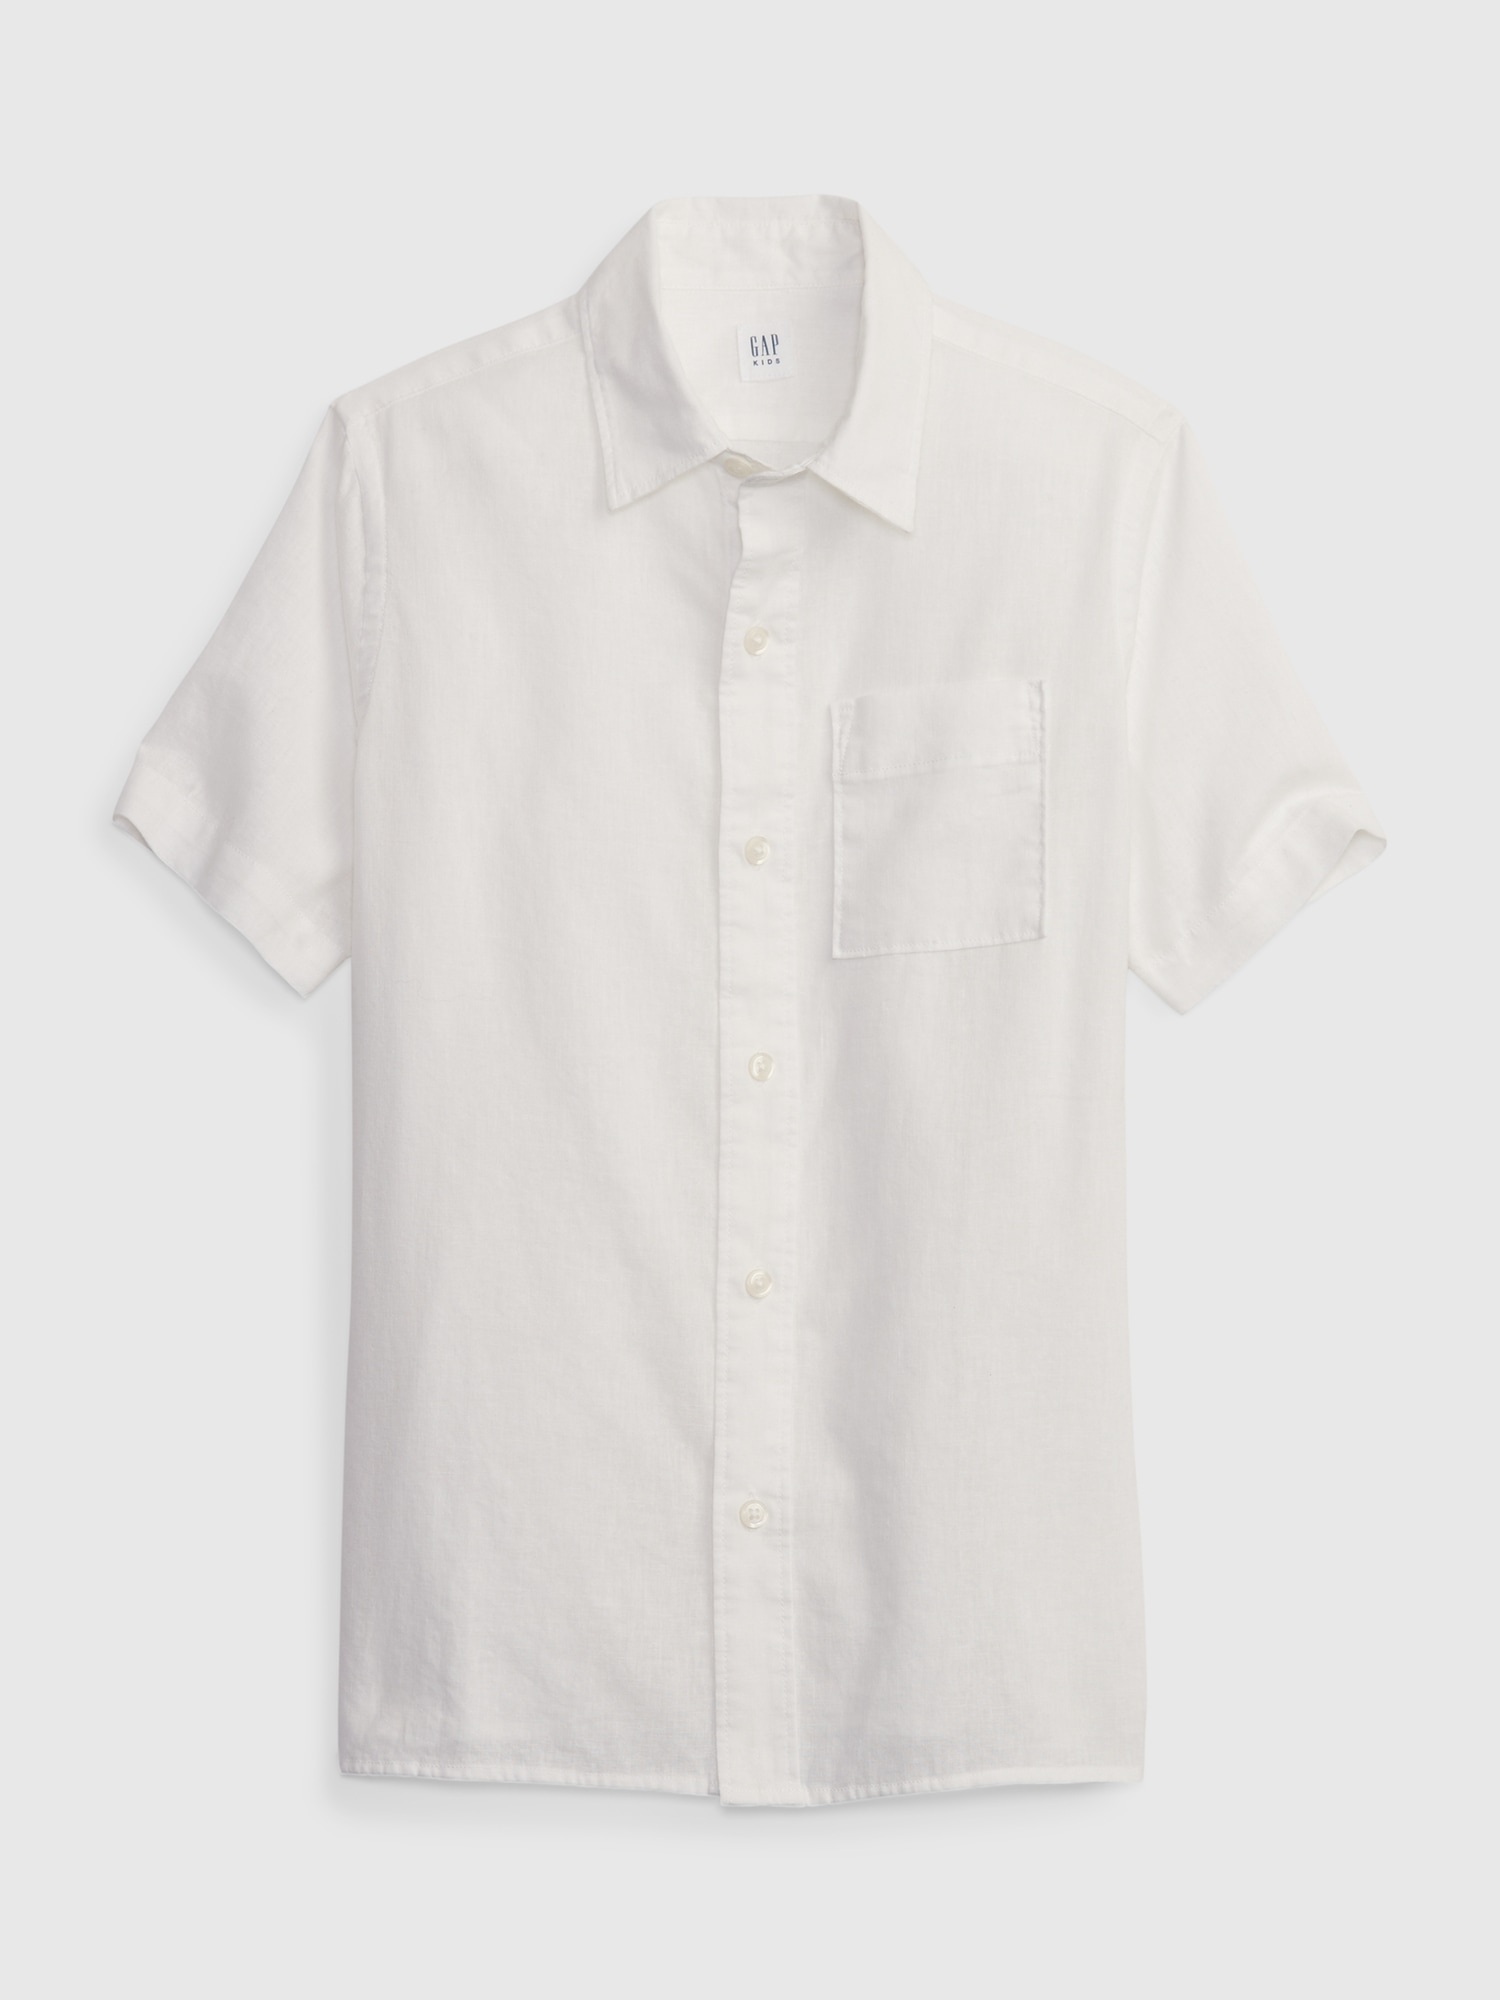 Gap Kids Linen-Cotton Oxford Shirt white. 1